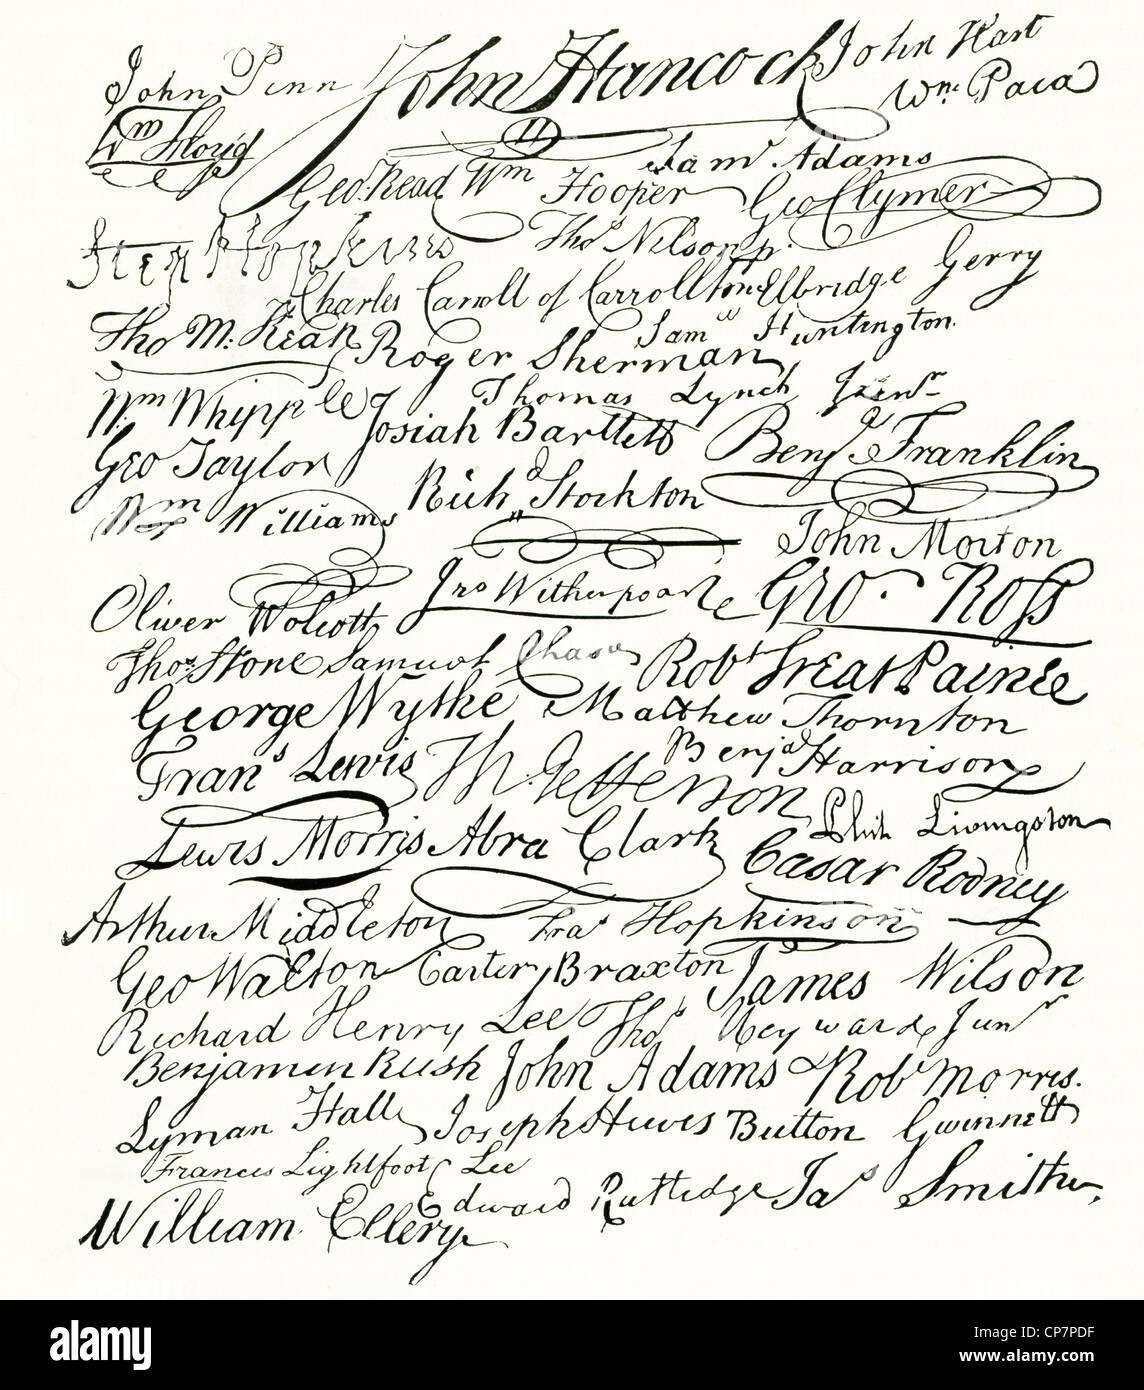 Es wurden 56 Unterzeichner, die Declaration of Independence, die erklärt, dass die 13 Kolonien jetzt unabhängig waren. Stockfoto